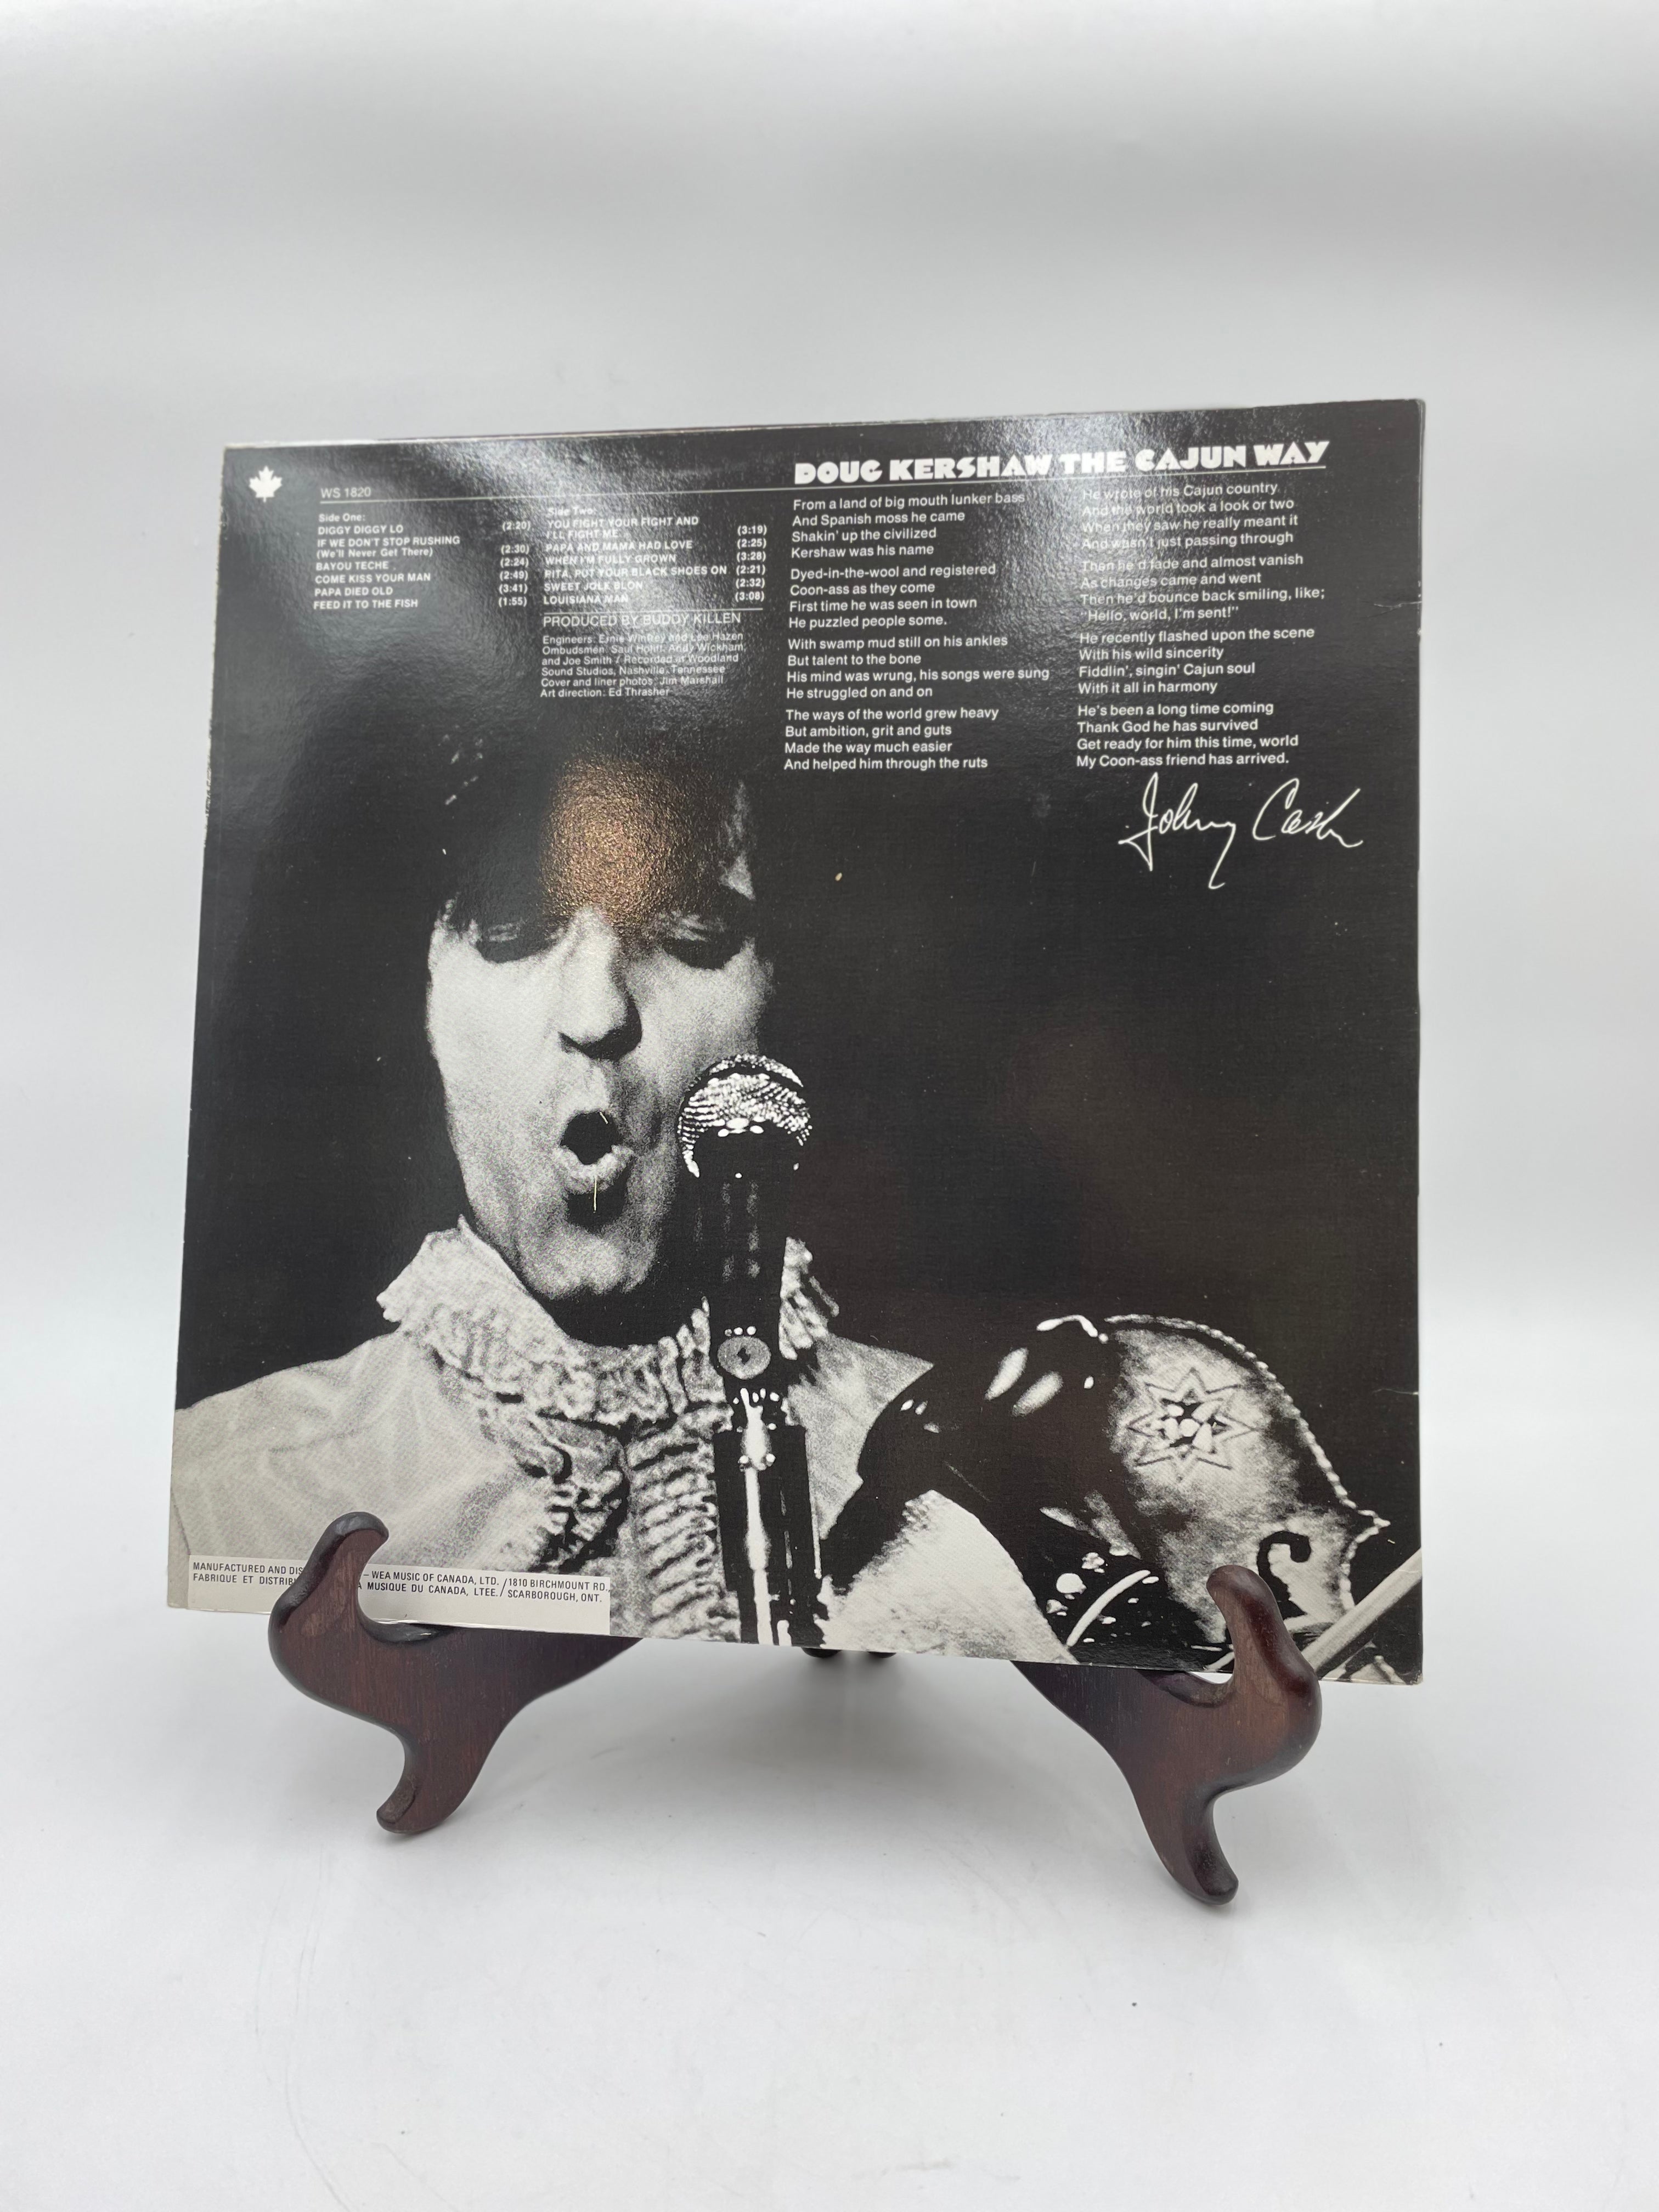 Doug Kershaw - The Cajun Way - Disque vinyle